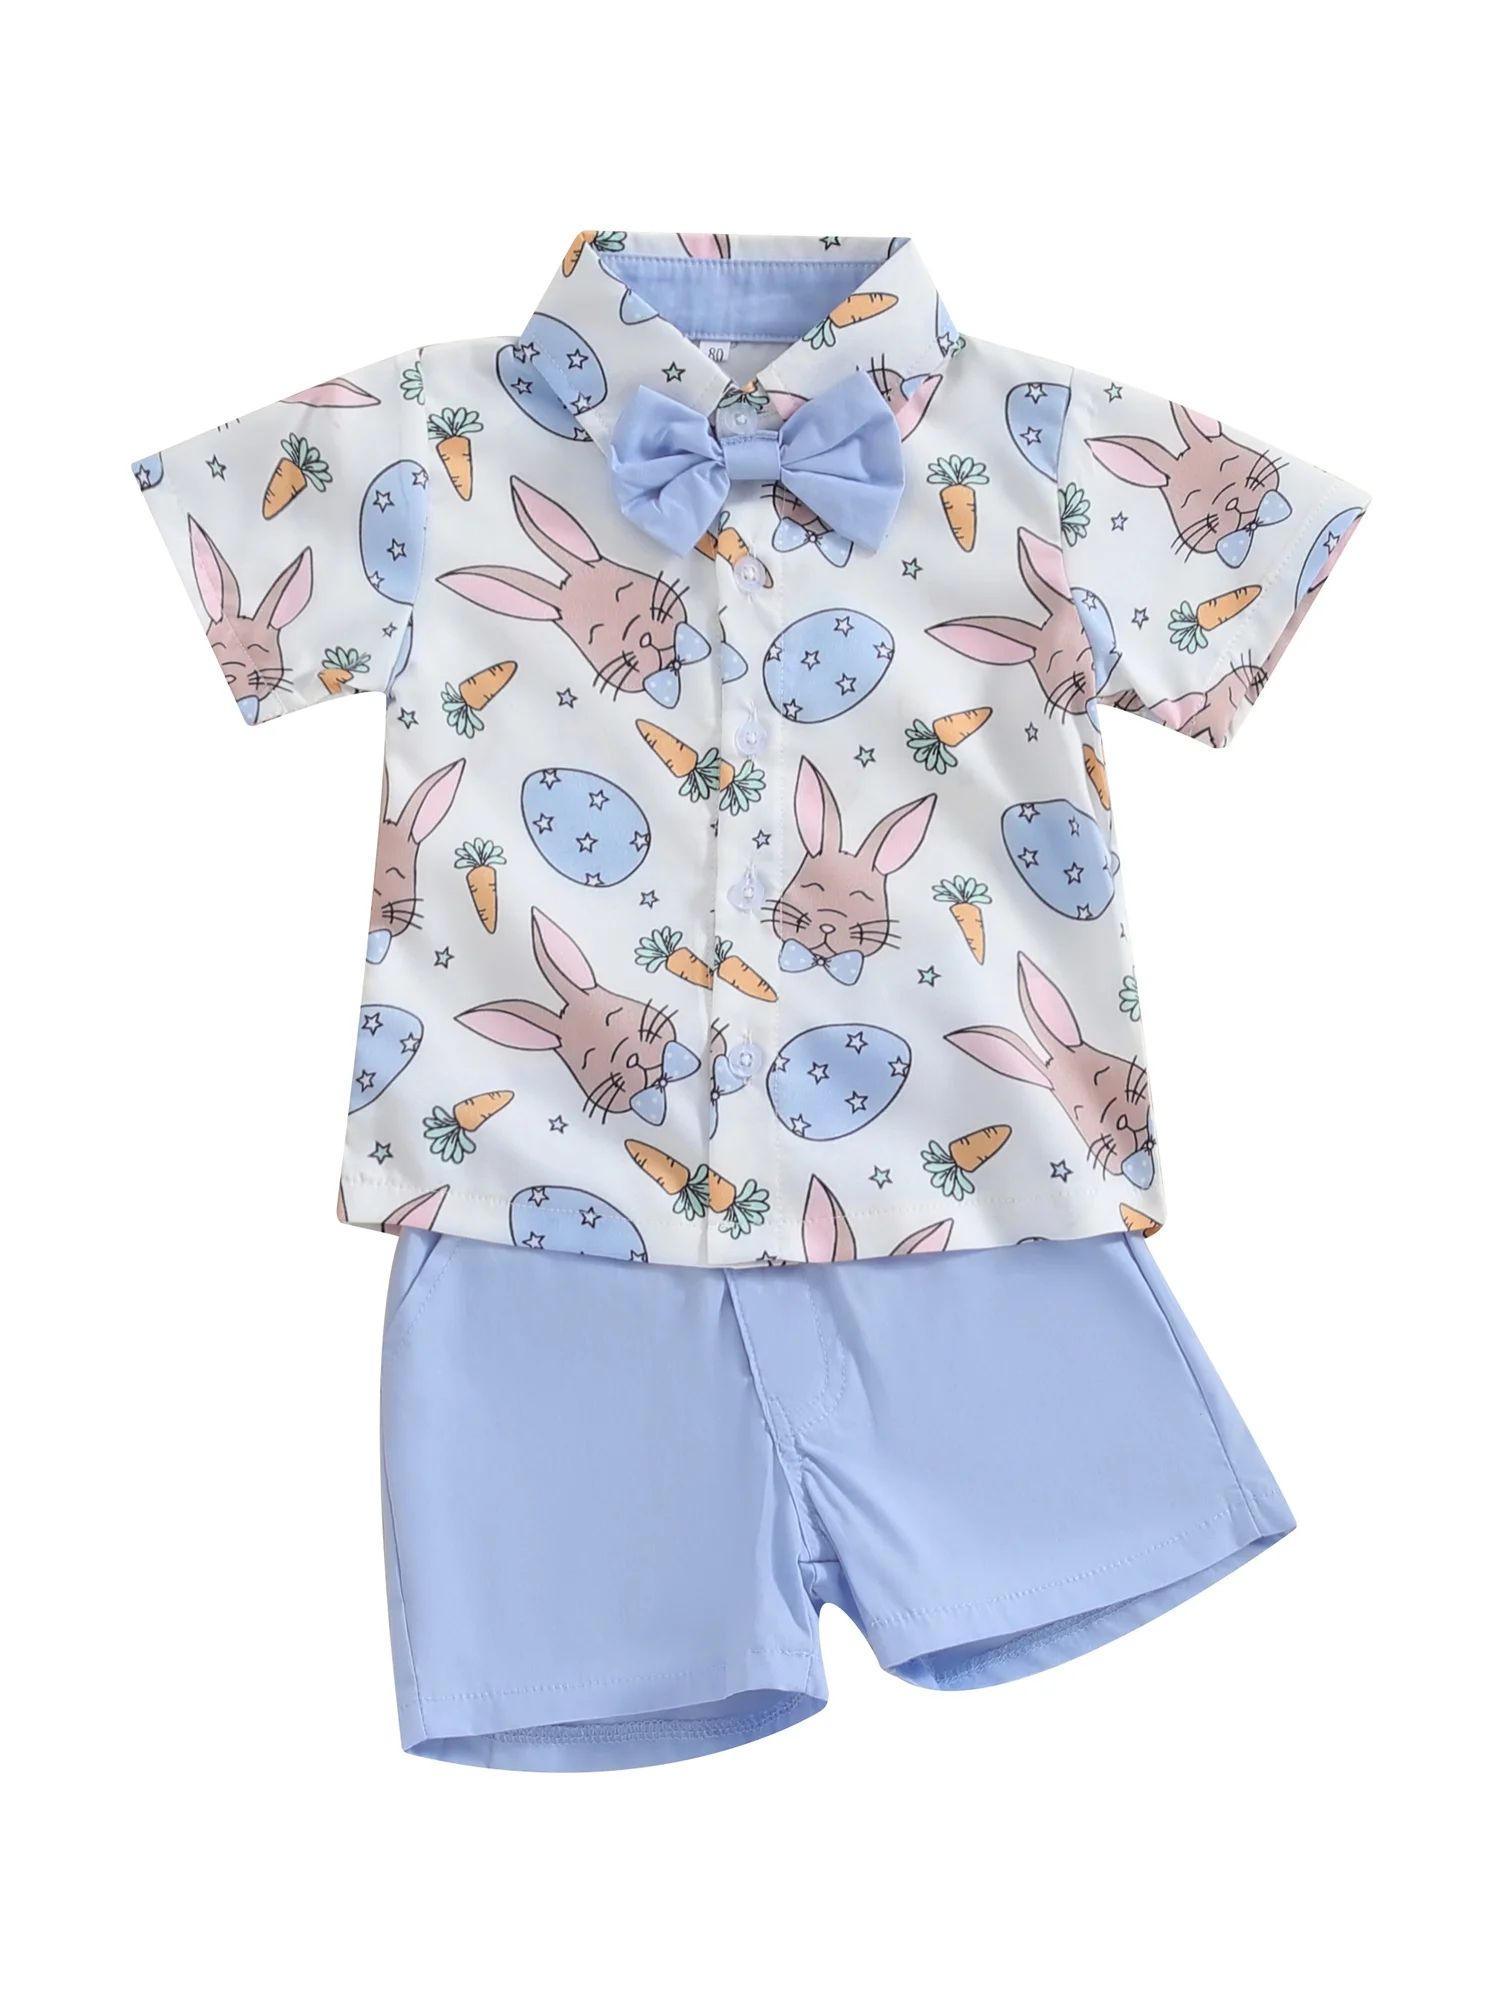 Kishawna Toddler Boys Easter Outfits Carrot Rabbit Print Short Sleeve Shirts and Shorts 2Pcs Set | Walmart (US)